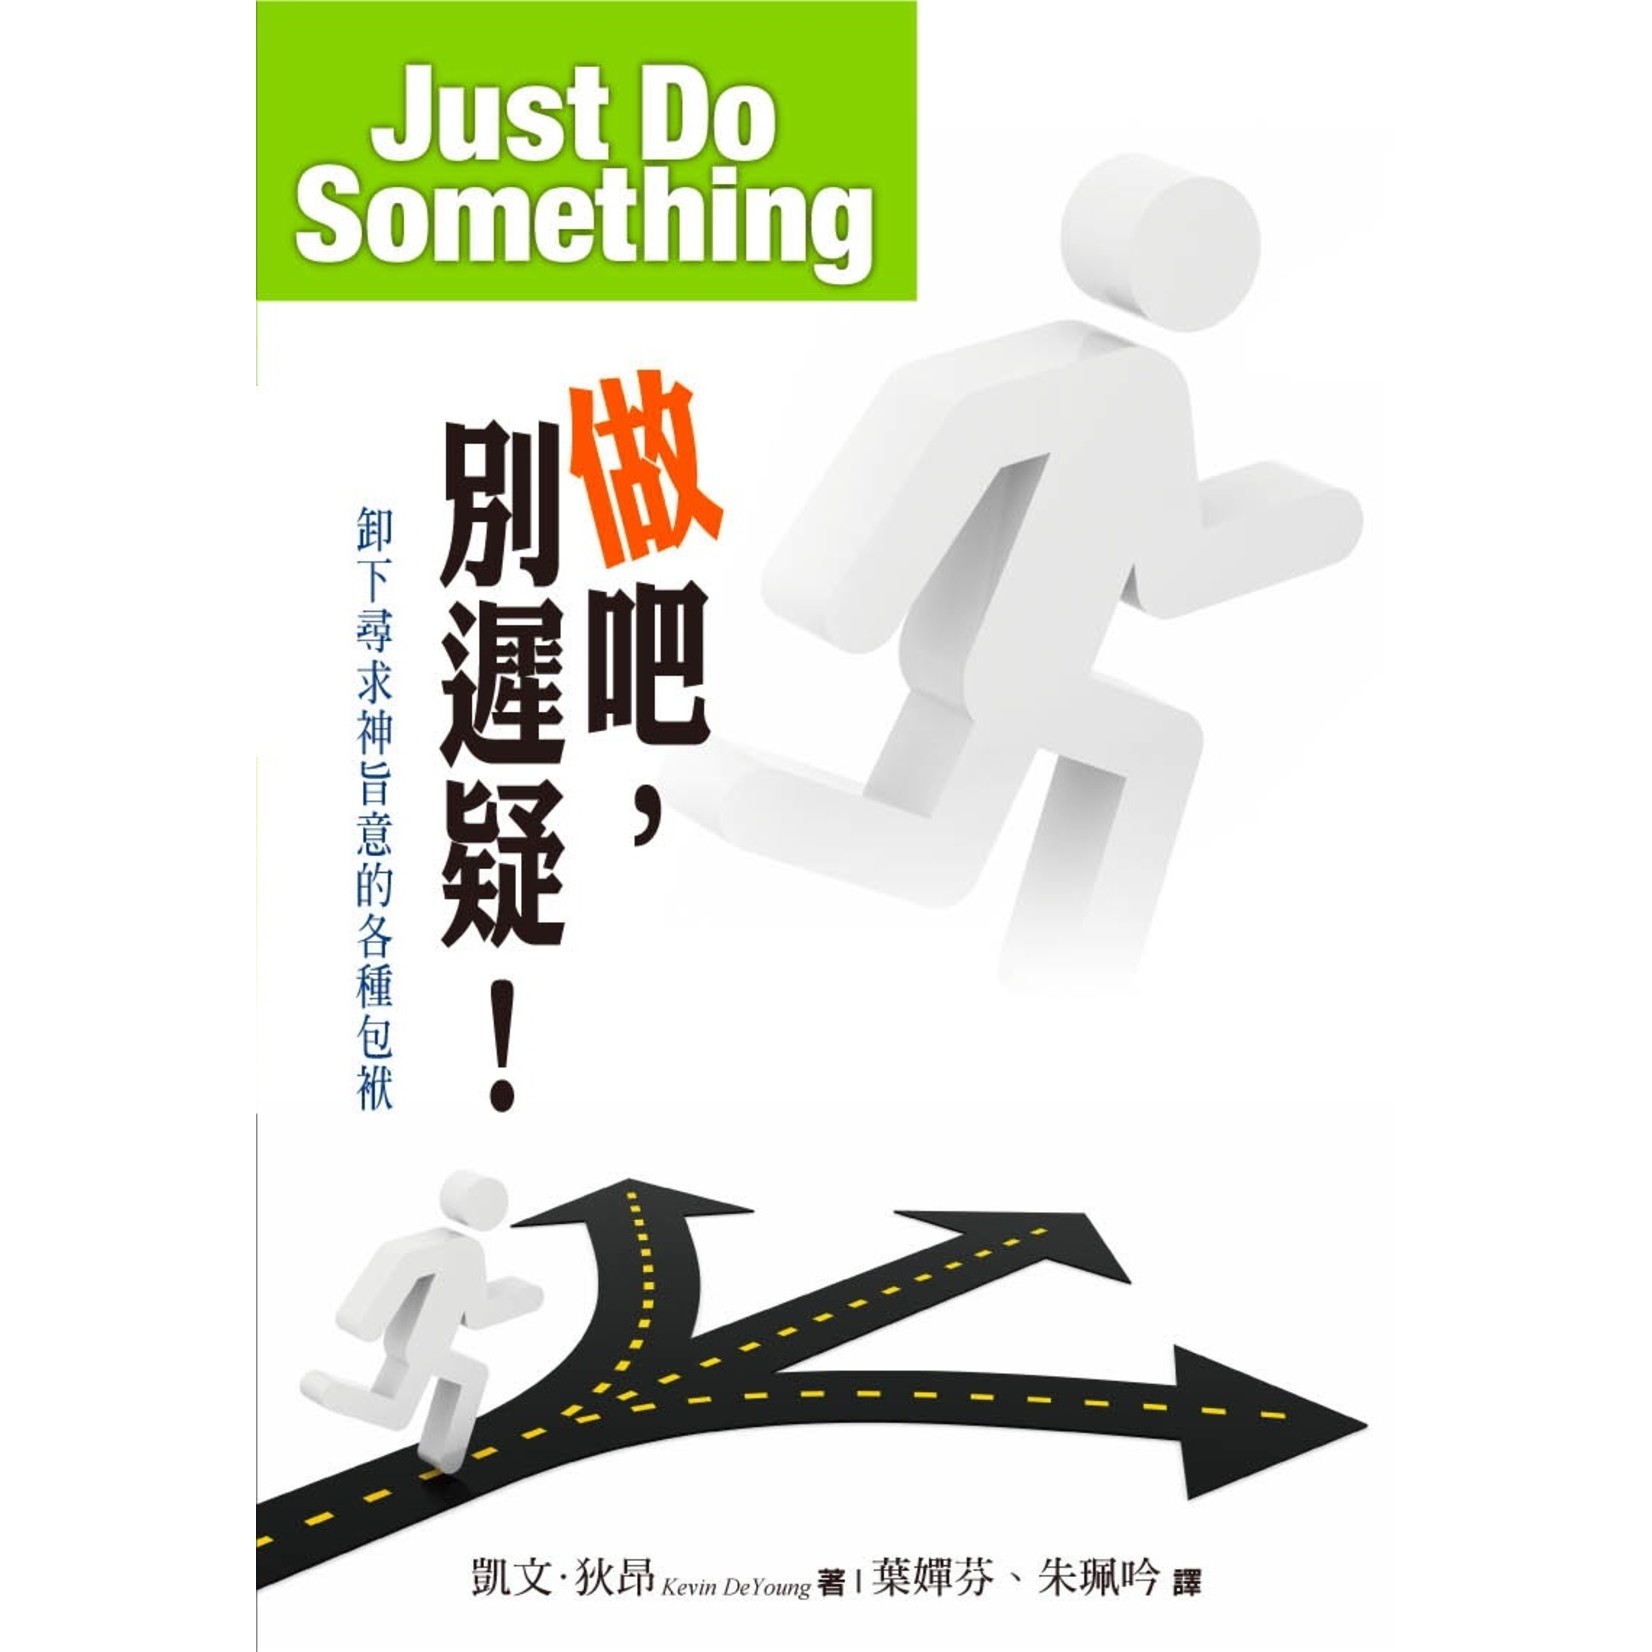 中國學園傳道會 Taiwan Campus Crusade for Christ 做吧，別遲疑！ Just Do Something